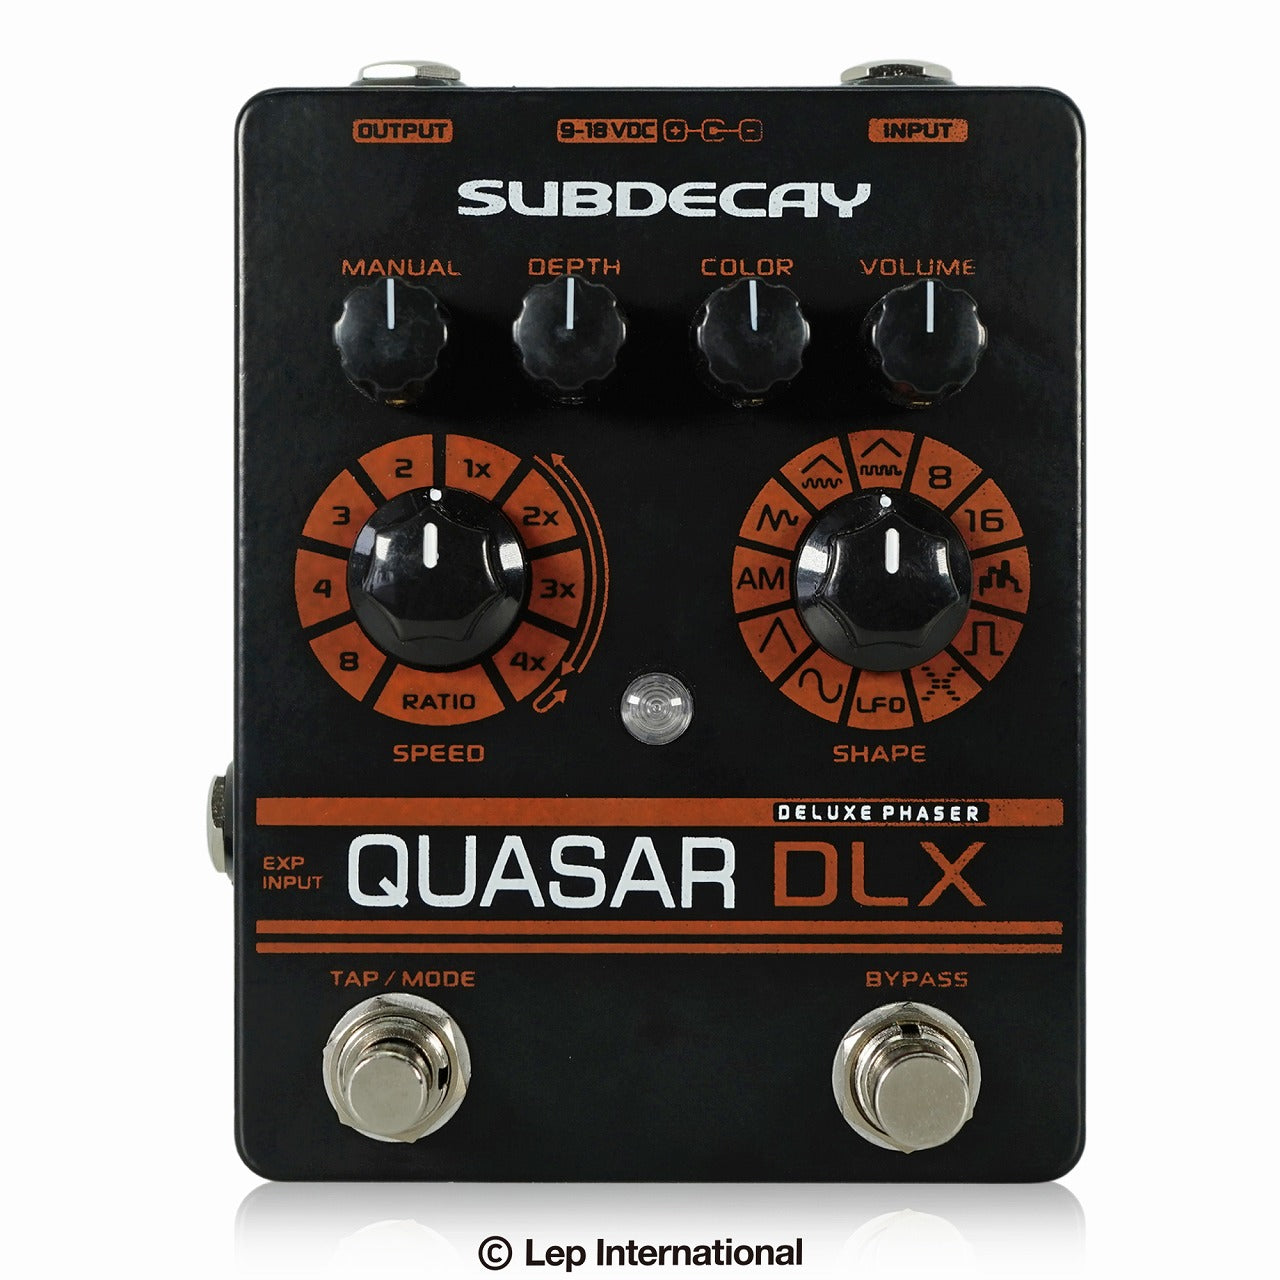 Subdecay/Quasar DLX – LEP INTERNATIONAL